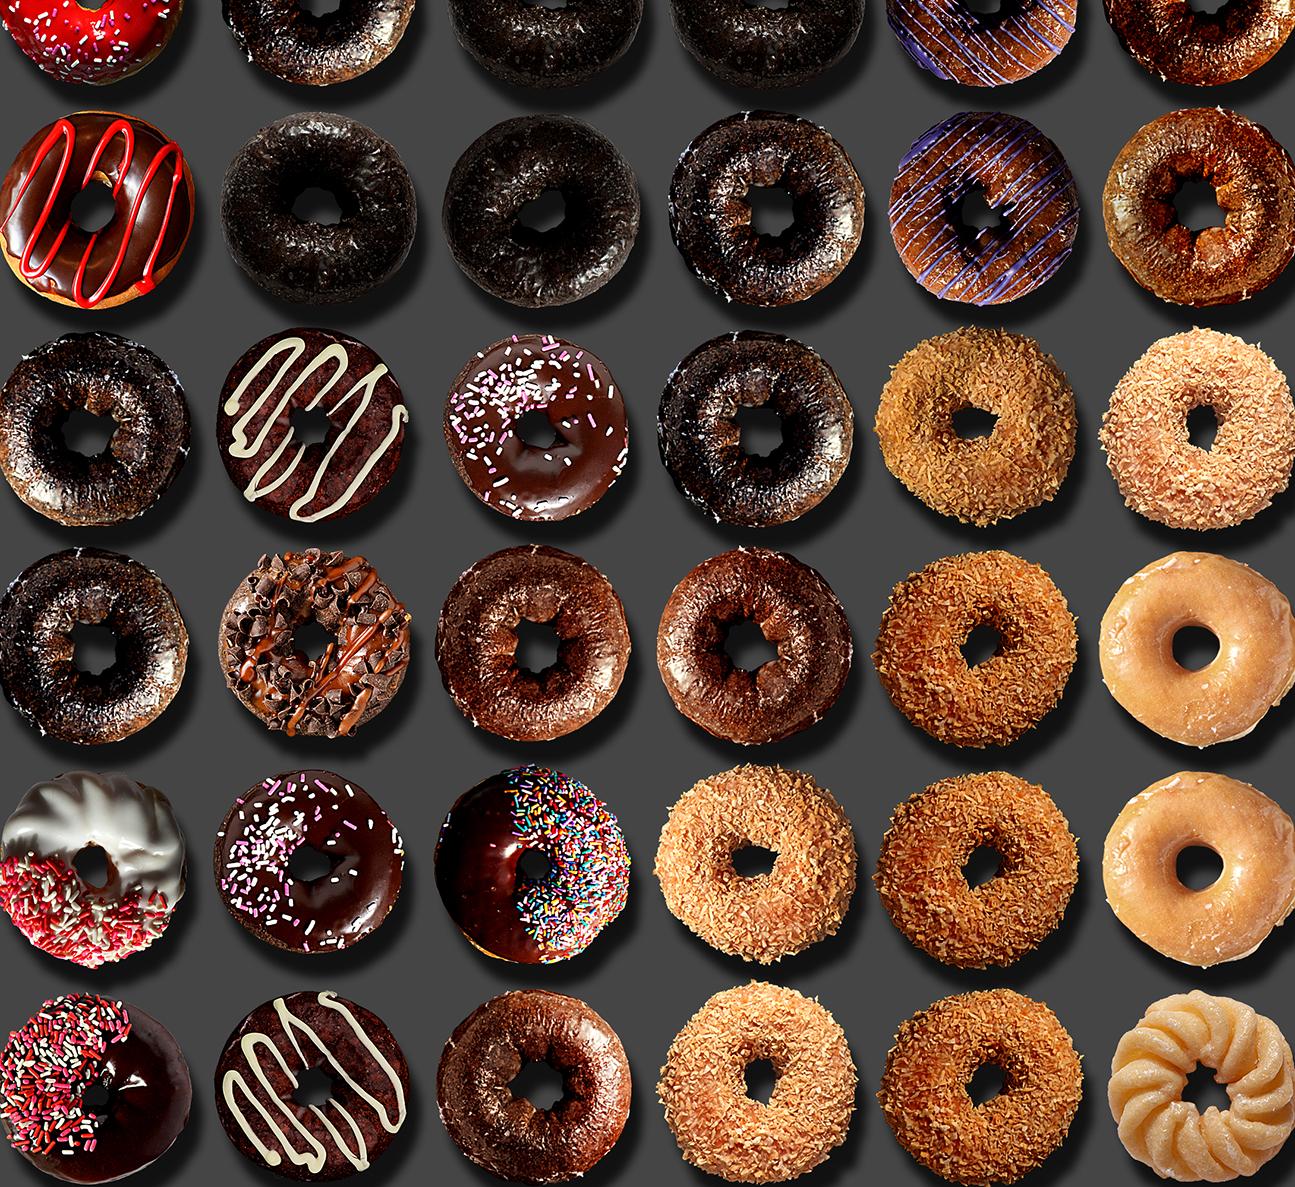 Vous avez lu les extraordinaires portraits de donuts de Candice CMC sur les médias sociaux du monde entier et nous sommes enthousiastes et fiers de représenter son travail.
J'ai inclus dans cette liste une image tirée de certains des médias sociaux